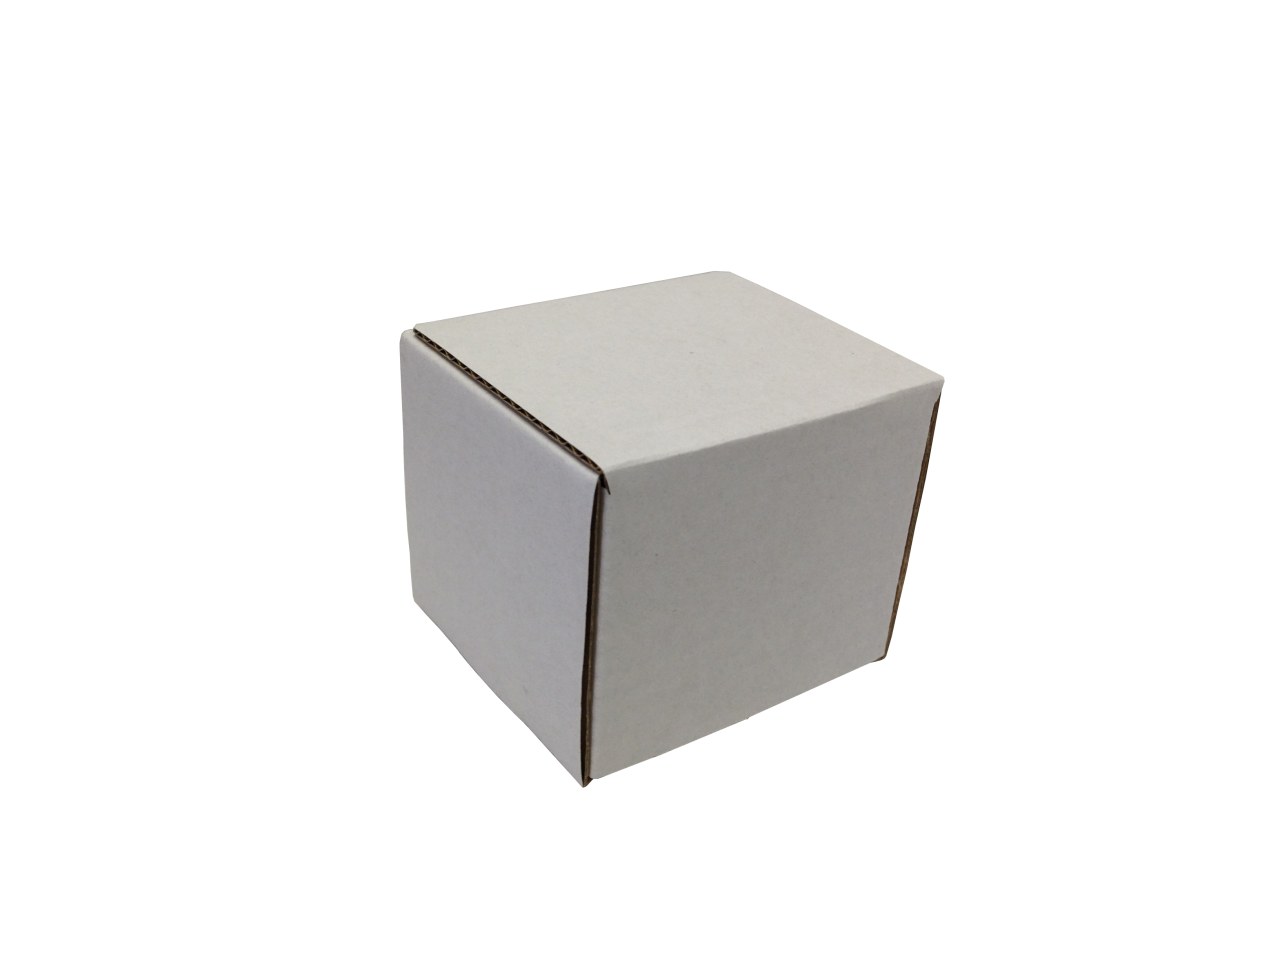 Kis méretű önzáró tároló doboz (45x45x45 mm) Kis méretű, önzáródó, hullámkarton tároló doboz felnyitható tetővel

Felhasználás: 
Ajándéktárgyak, szerszámok, szerelvények, egyéb kisméretű tárgyak tárolására alkalmas kisméretű önzáródó hullámkarton tároló doboz.

Méret: 45 x 45 x 45 mm - hullámkarton tároló doboz
Kivitel: Fefco 0443

Anyag: mikrohullám karton papír
Színek: 
alap: barna, fehér
színes: bordó, fekete, kék, zöld